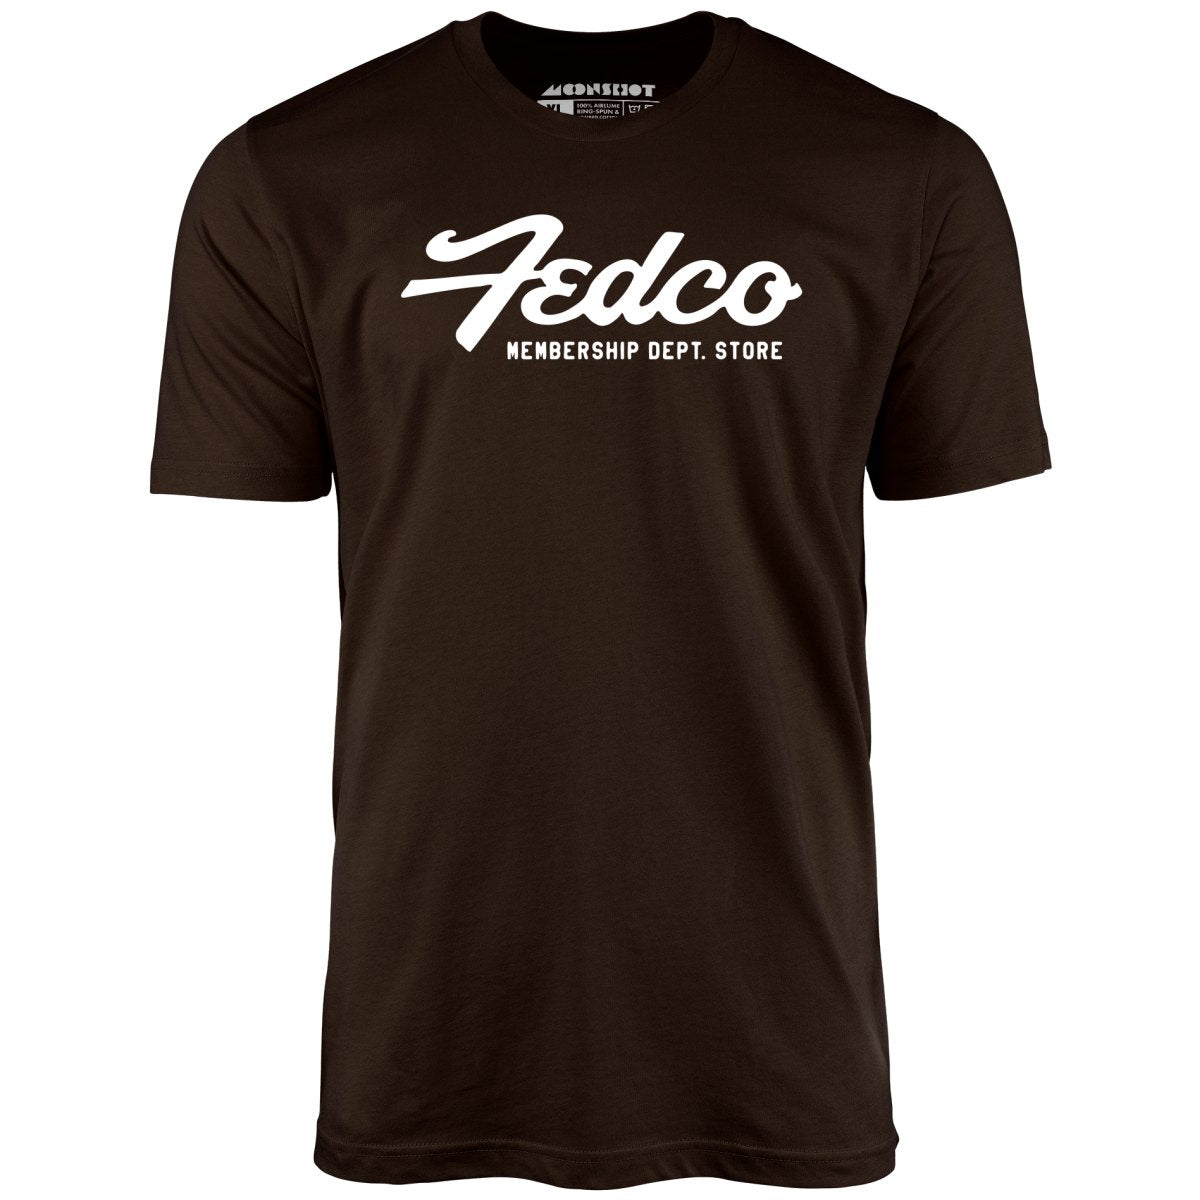 Fedco - Vintage Department Store - Unisex T-Shirt